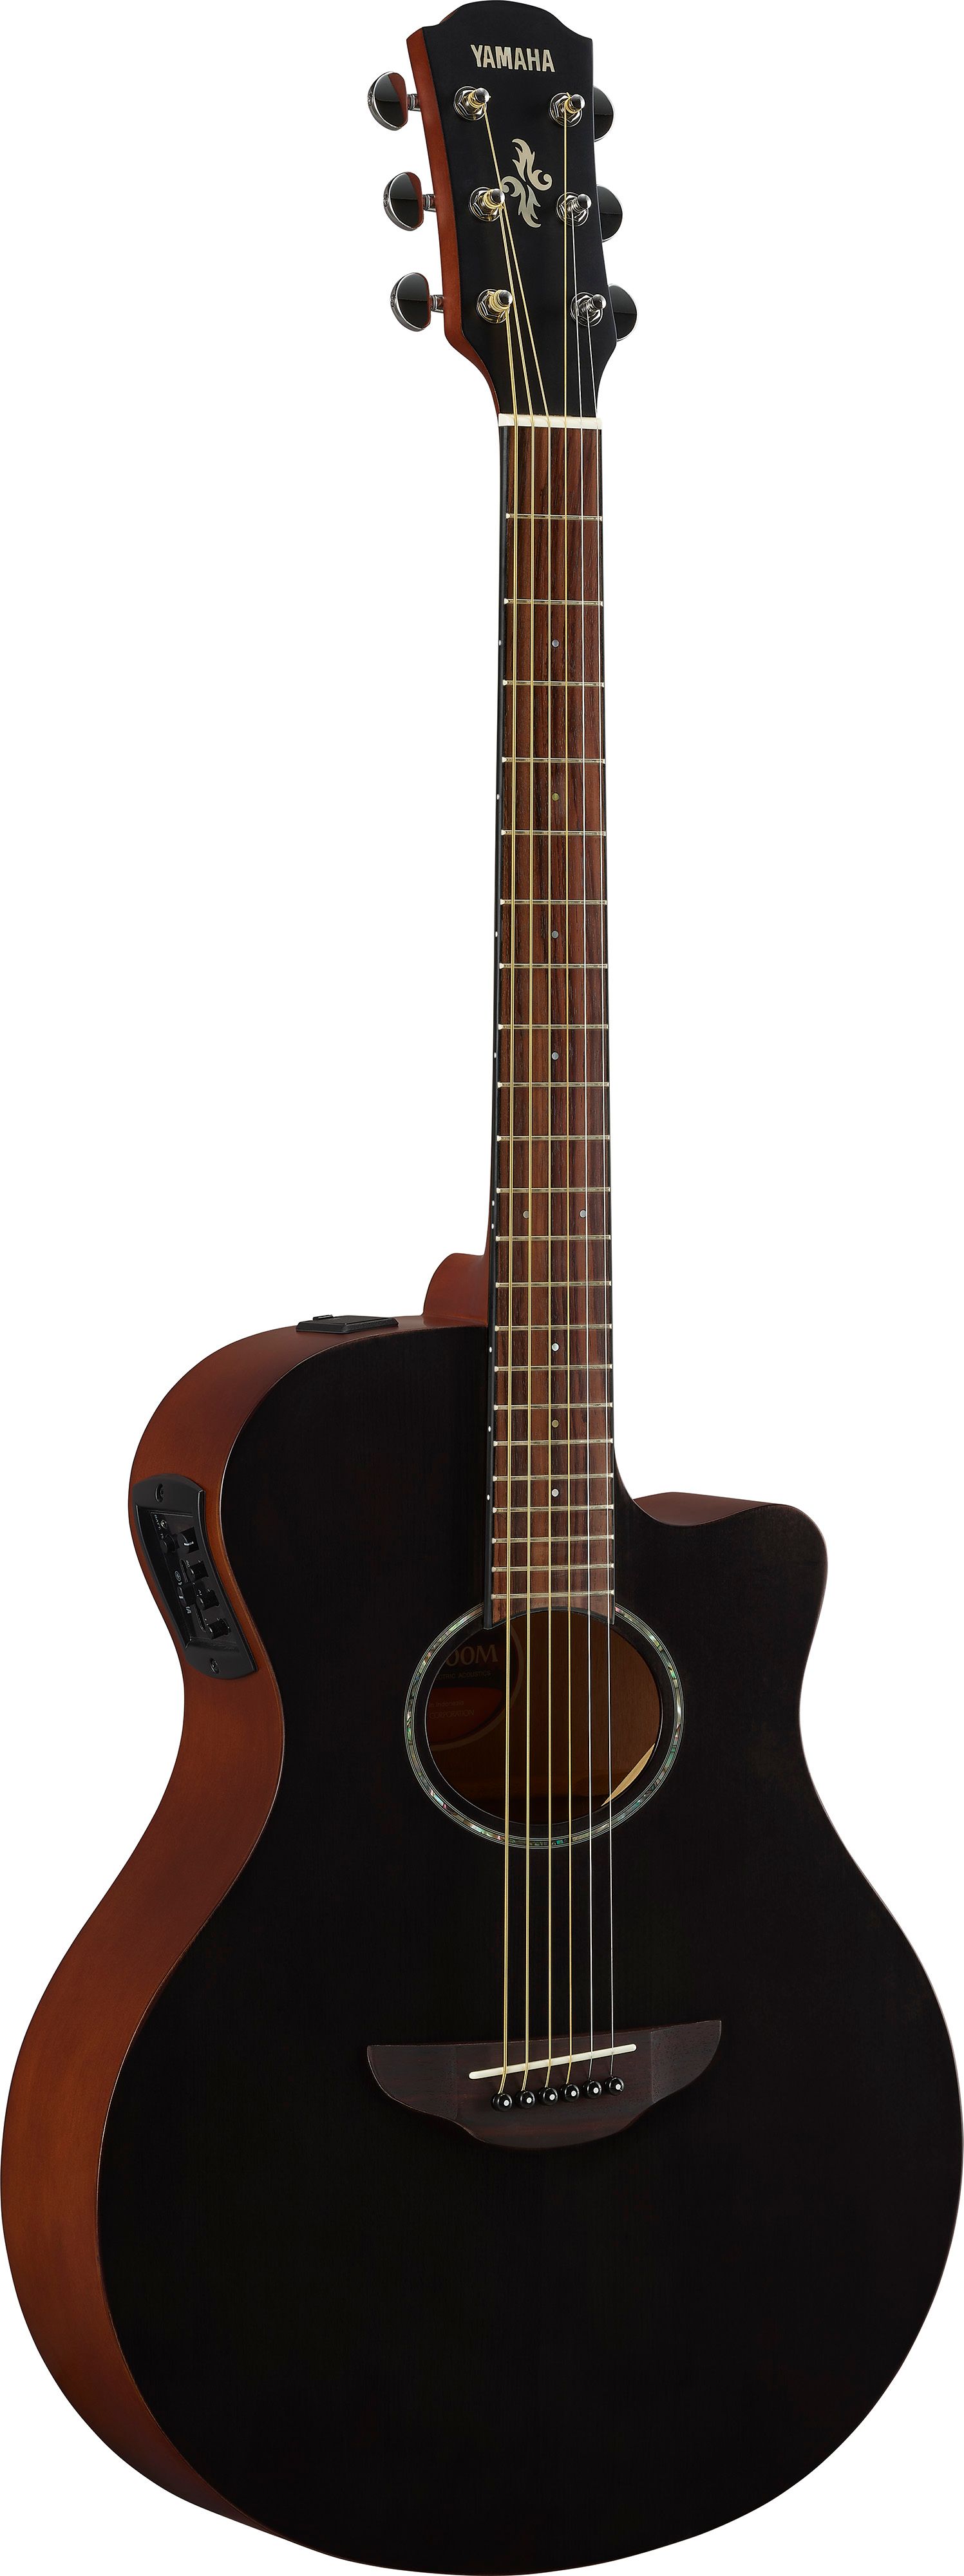 Yamaha APX600MSMB Western Guitar (Smokey Black)